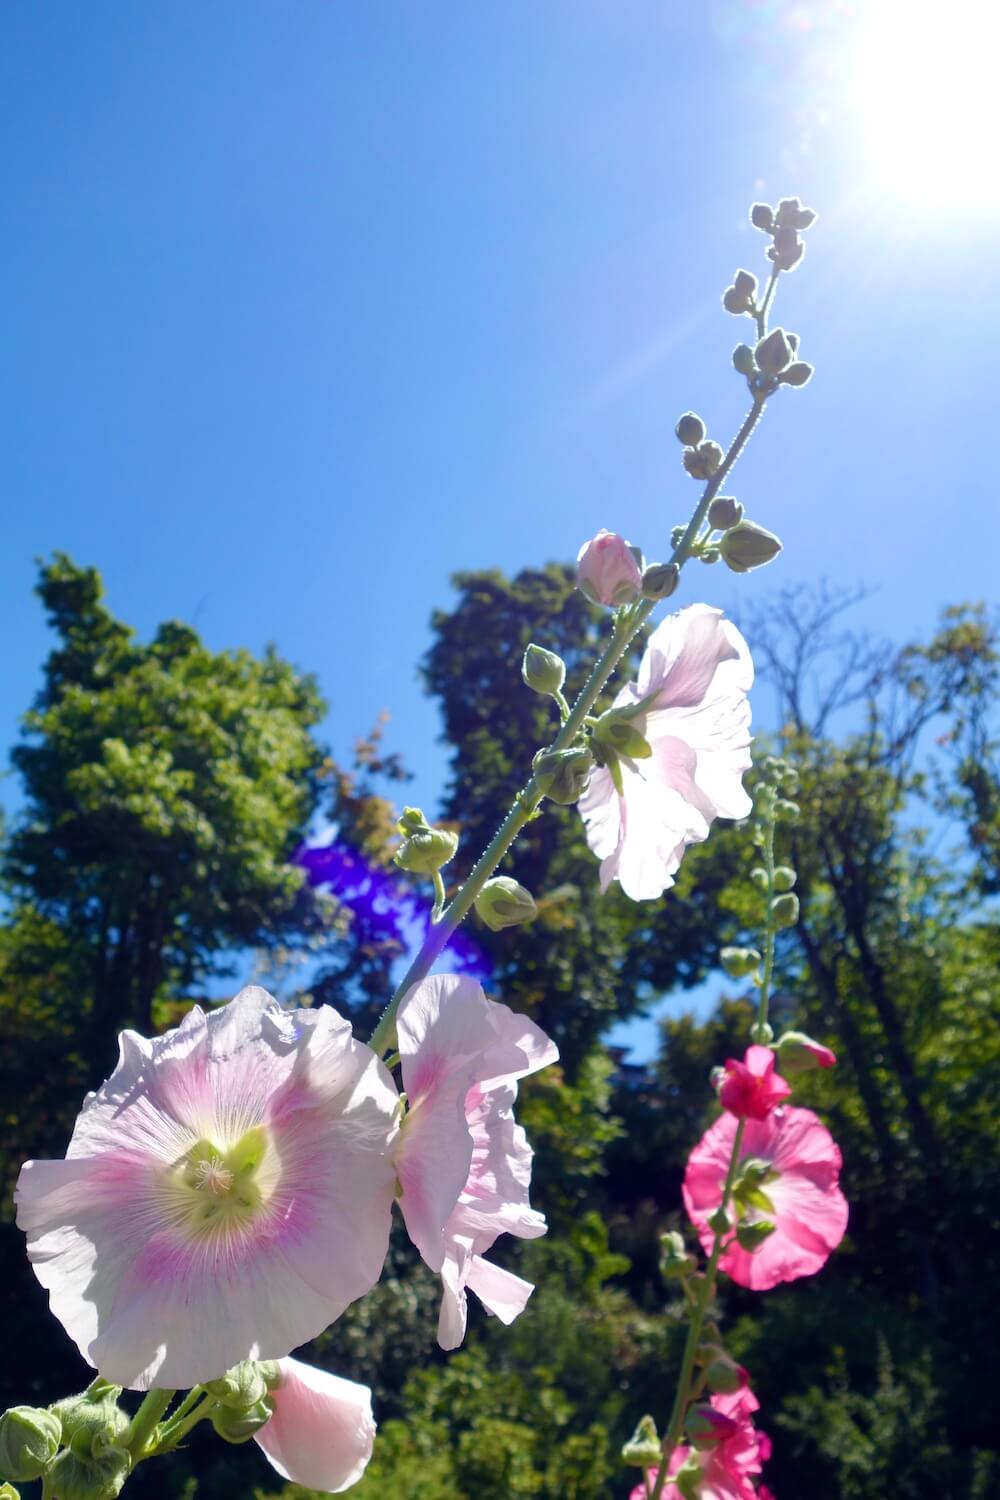 Hollyhocks shine in the midday sun at Streissguth Gardens in Seattle.  